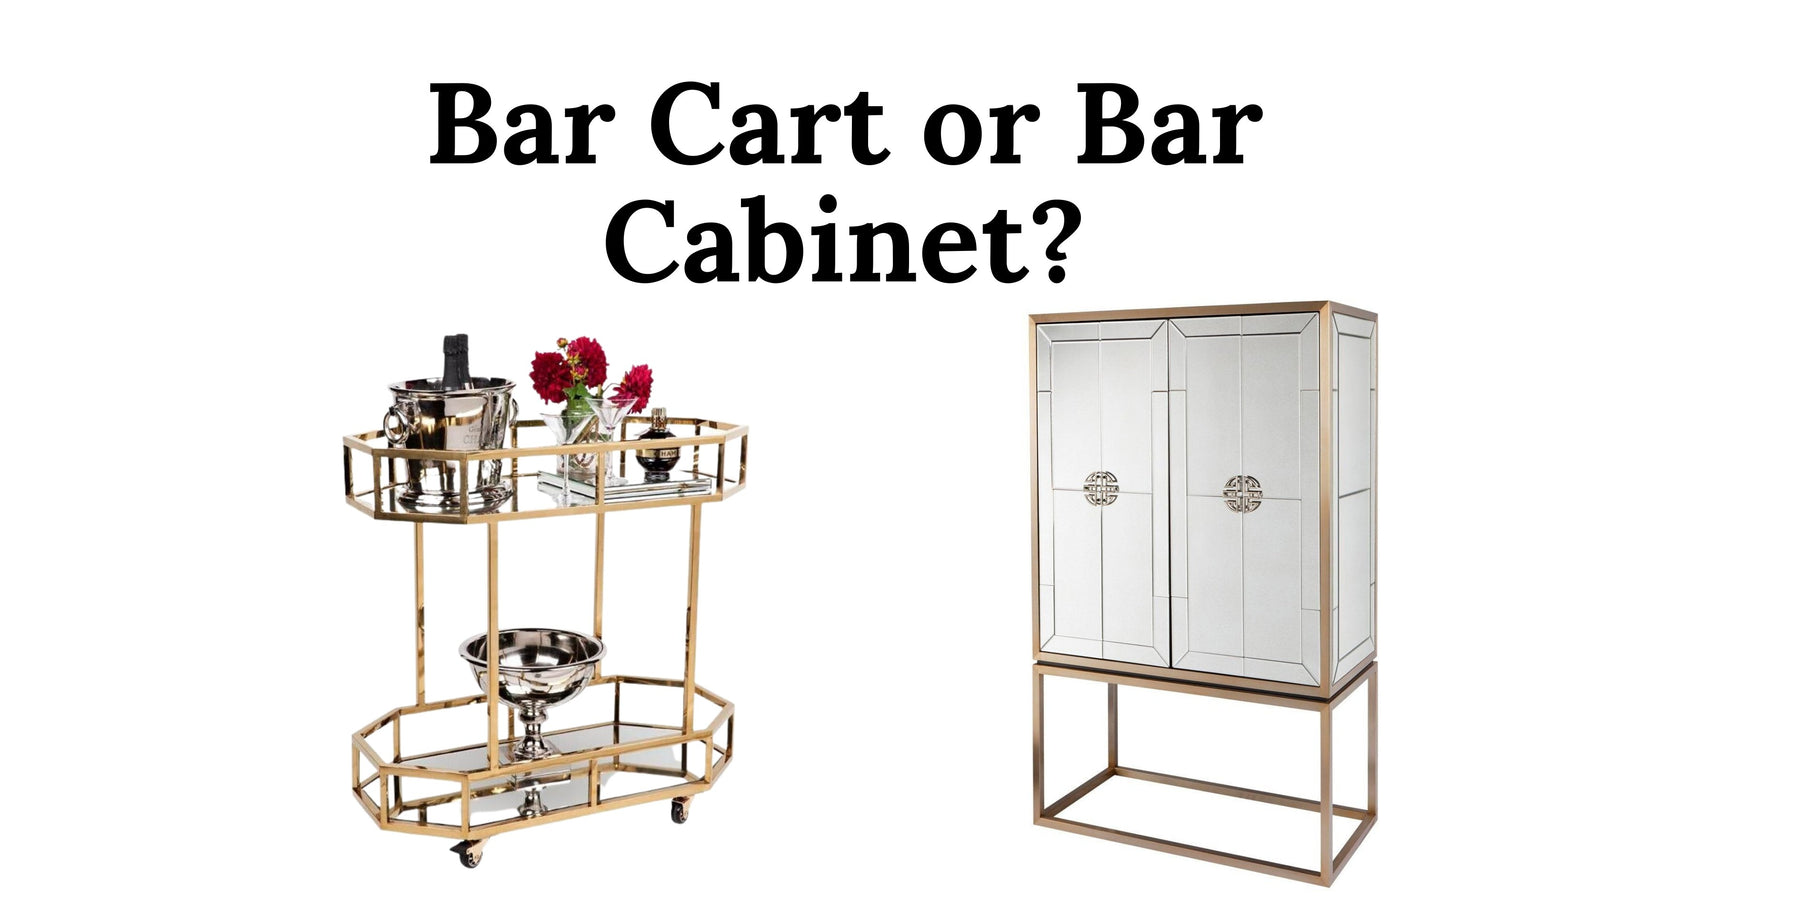 Bar Carts Or Bar Cabinets? - Lushmist